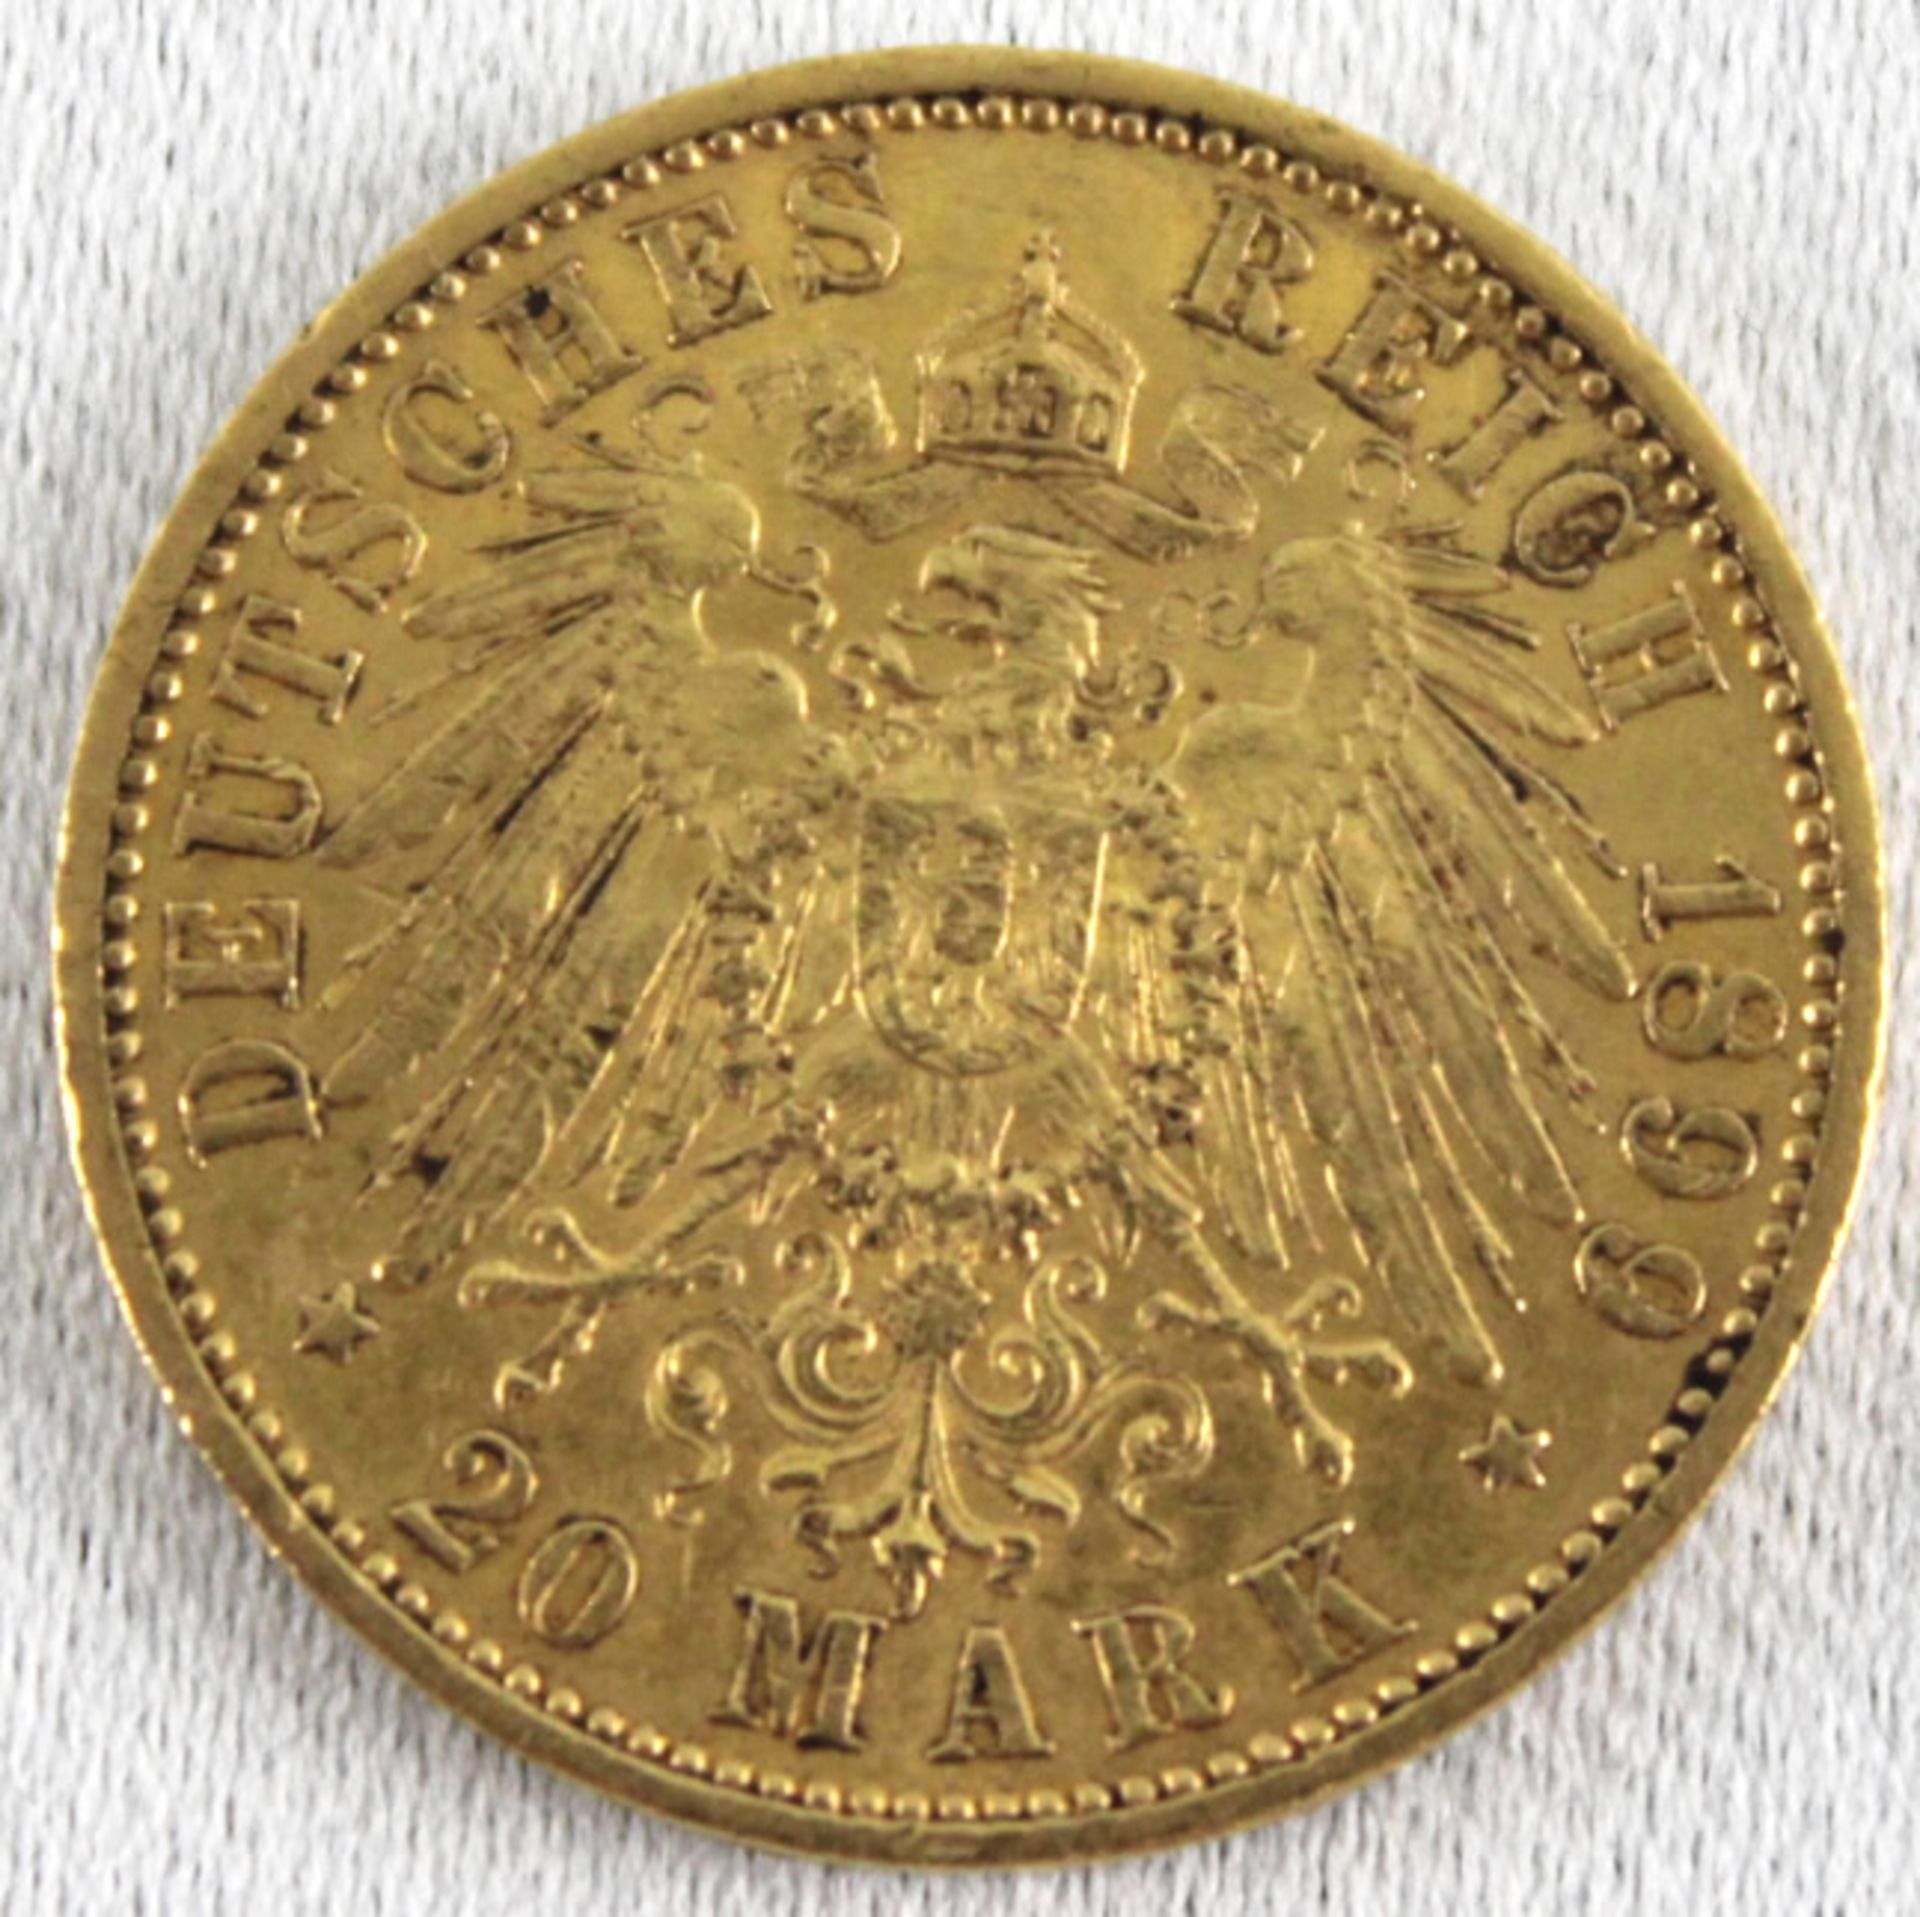 Deutsches Reich 20 Mark 1899 A. Wilhelm II. (1888-1918) - Deutscher Kaiser König von Preußen - Image 2 of 2